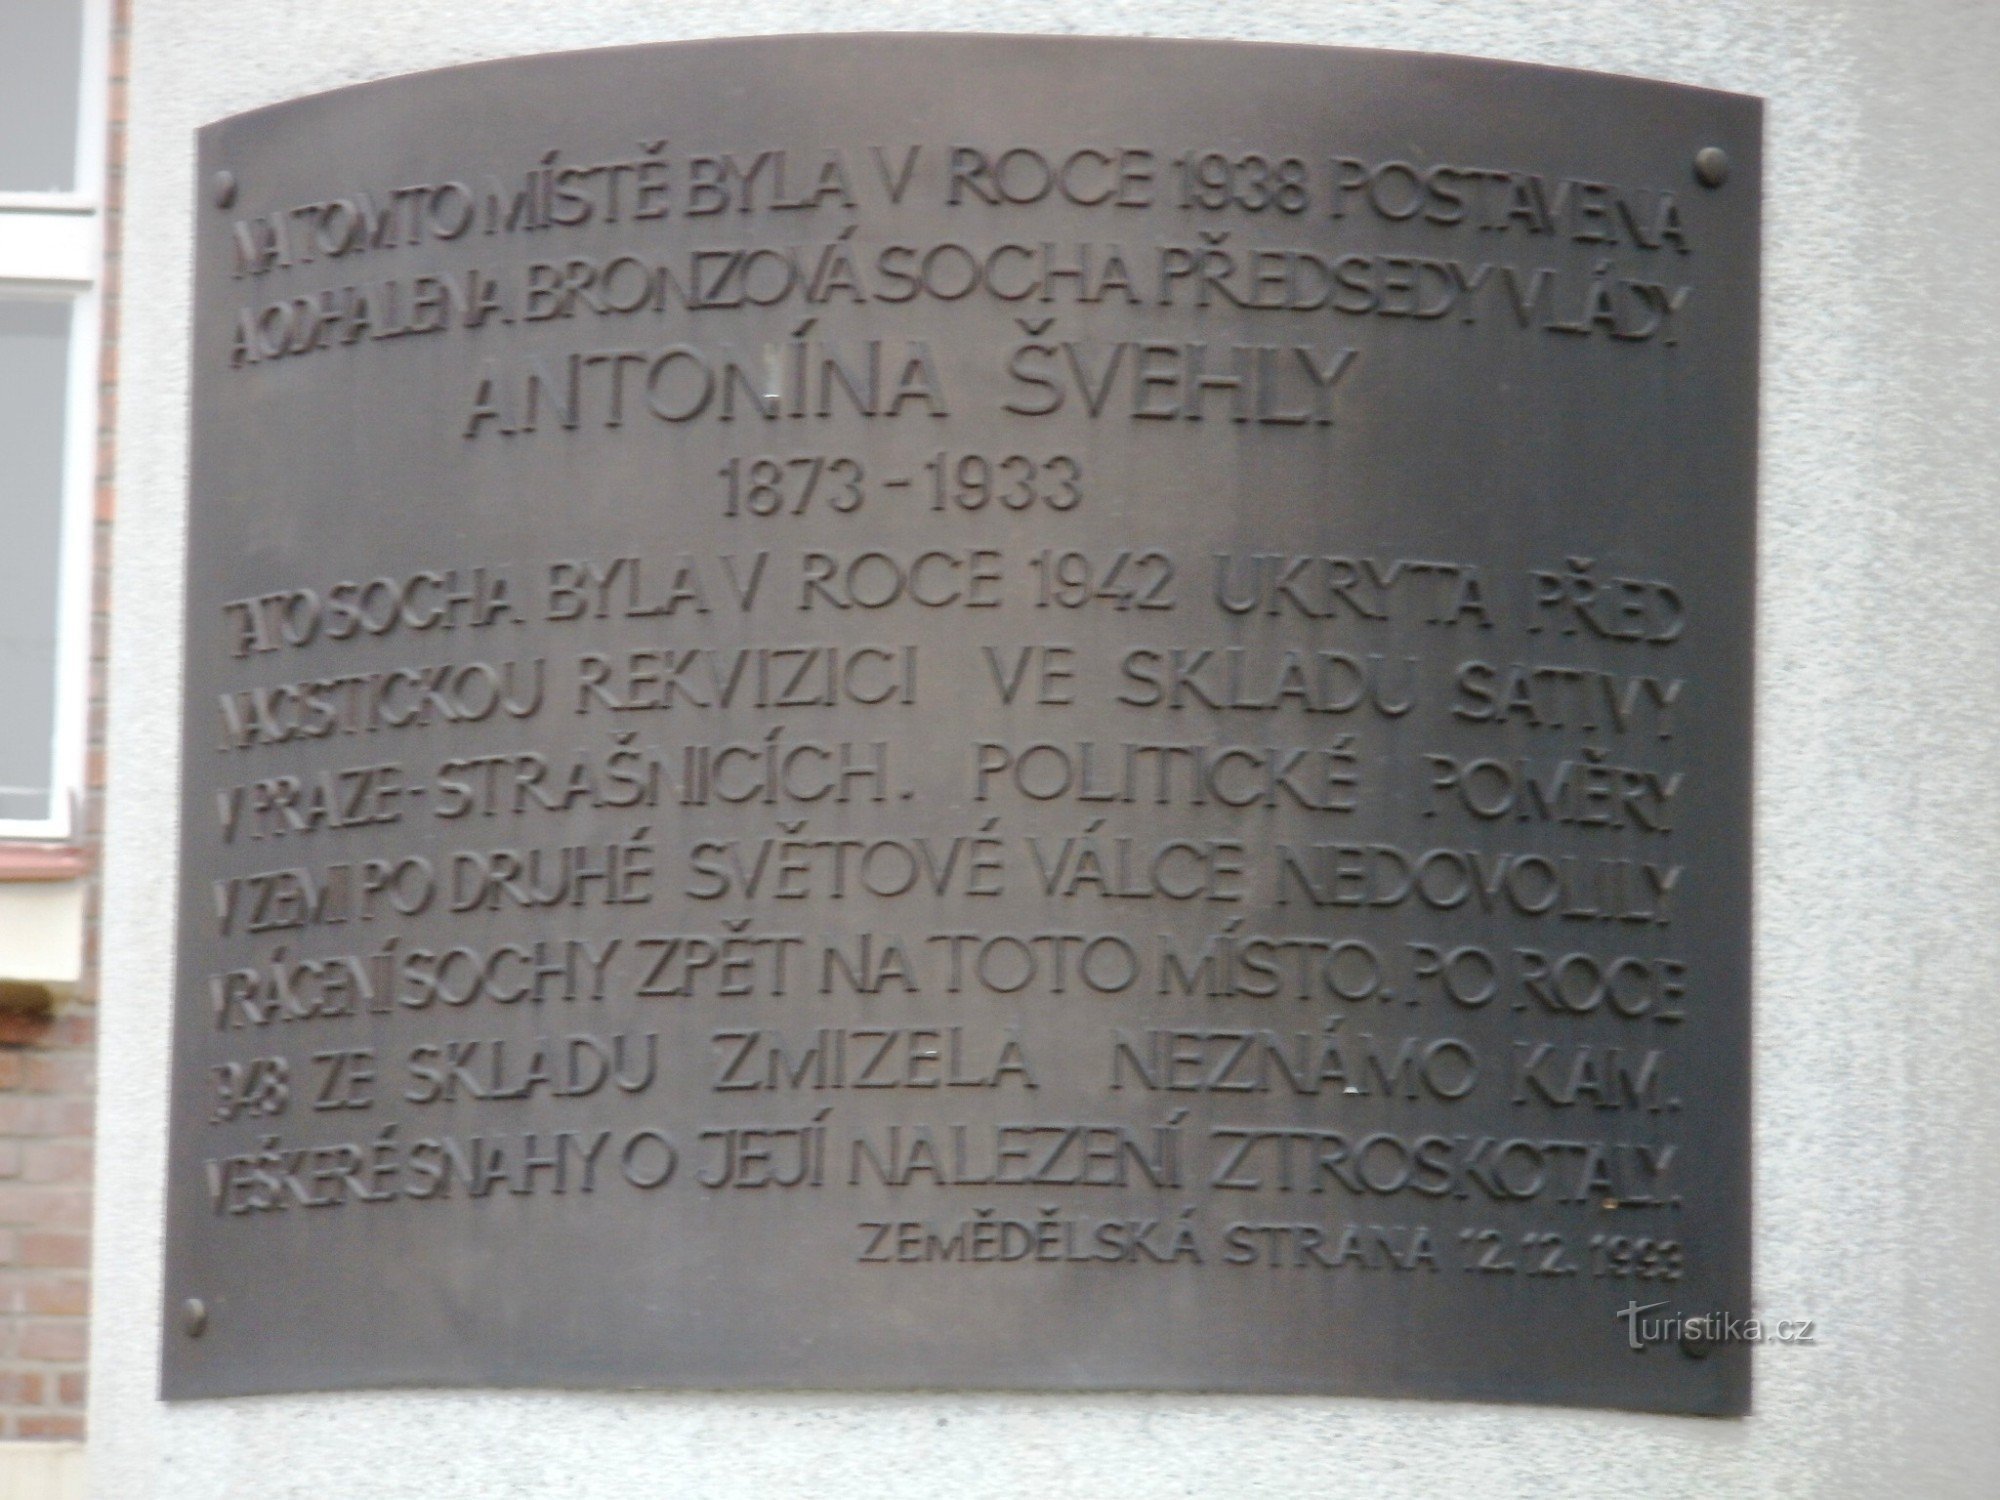 Havlíčkův Brod - monument to Antonín Švehla